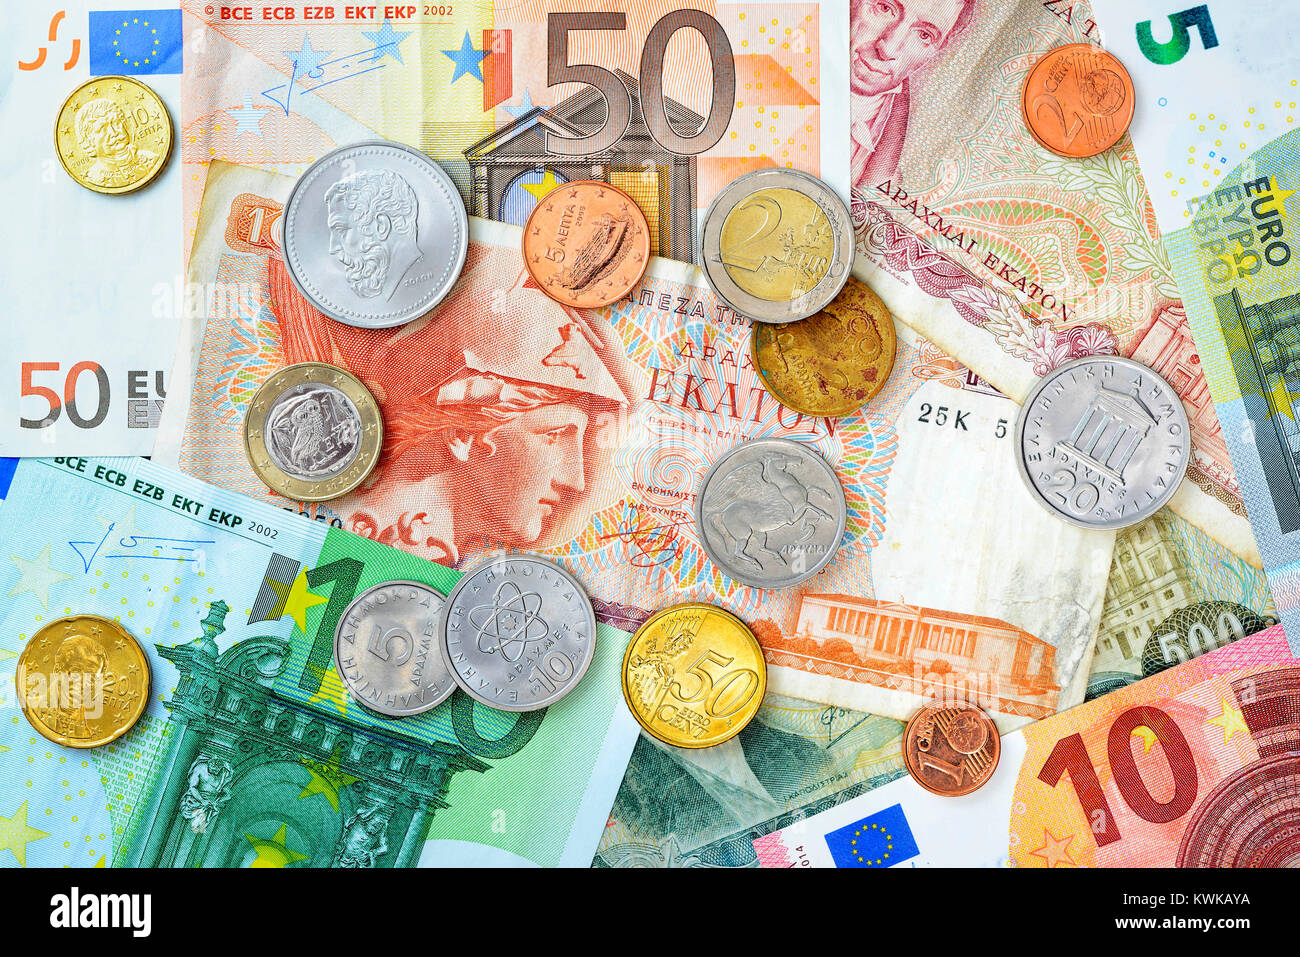 Griechische drachms, euronotes und Euromünzen, griechischen Drachmen, Euroscheine und Eurom?nzen Stockfoto